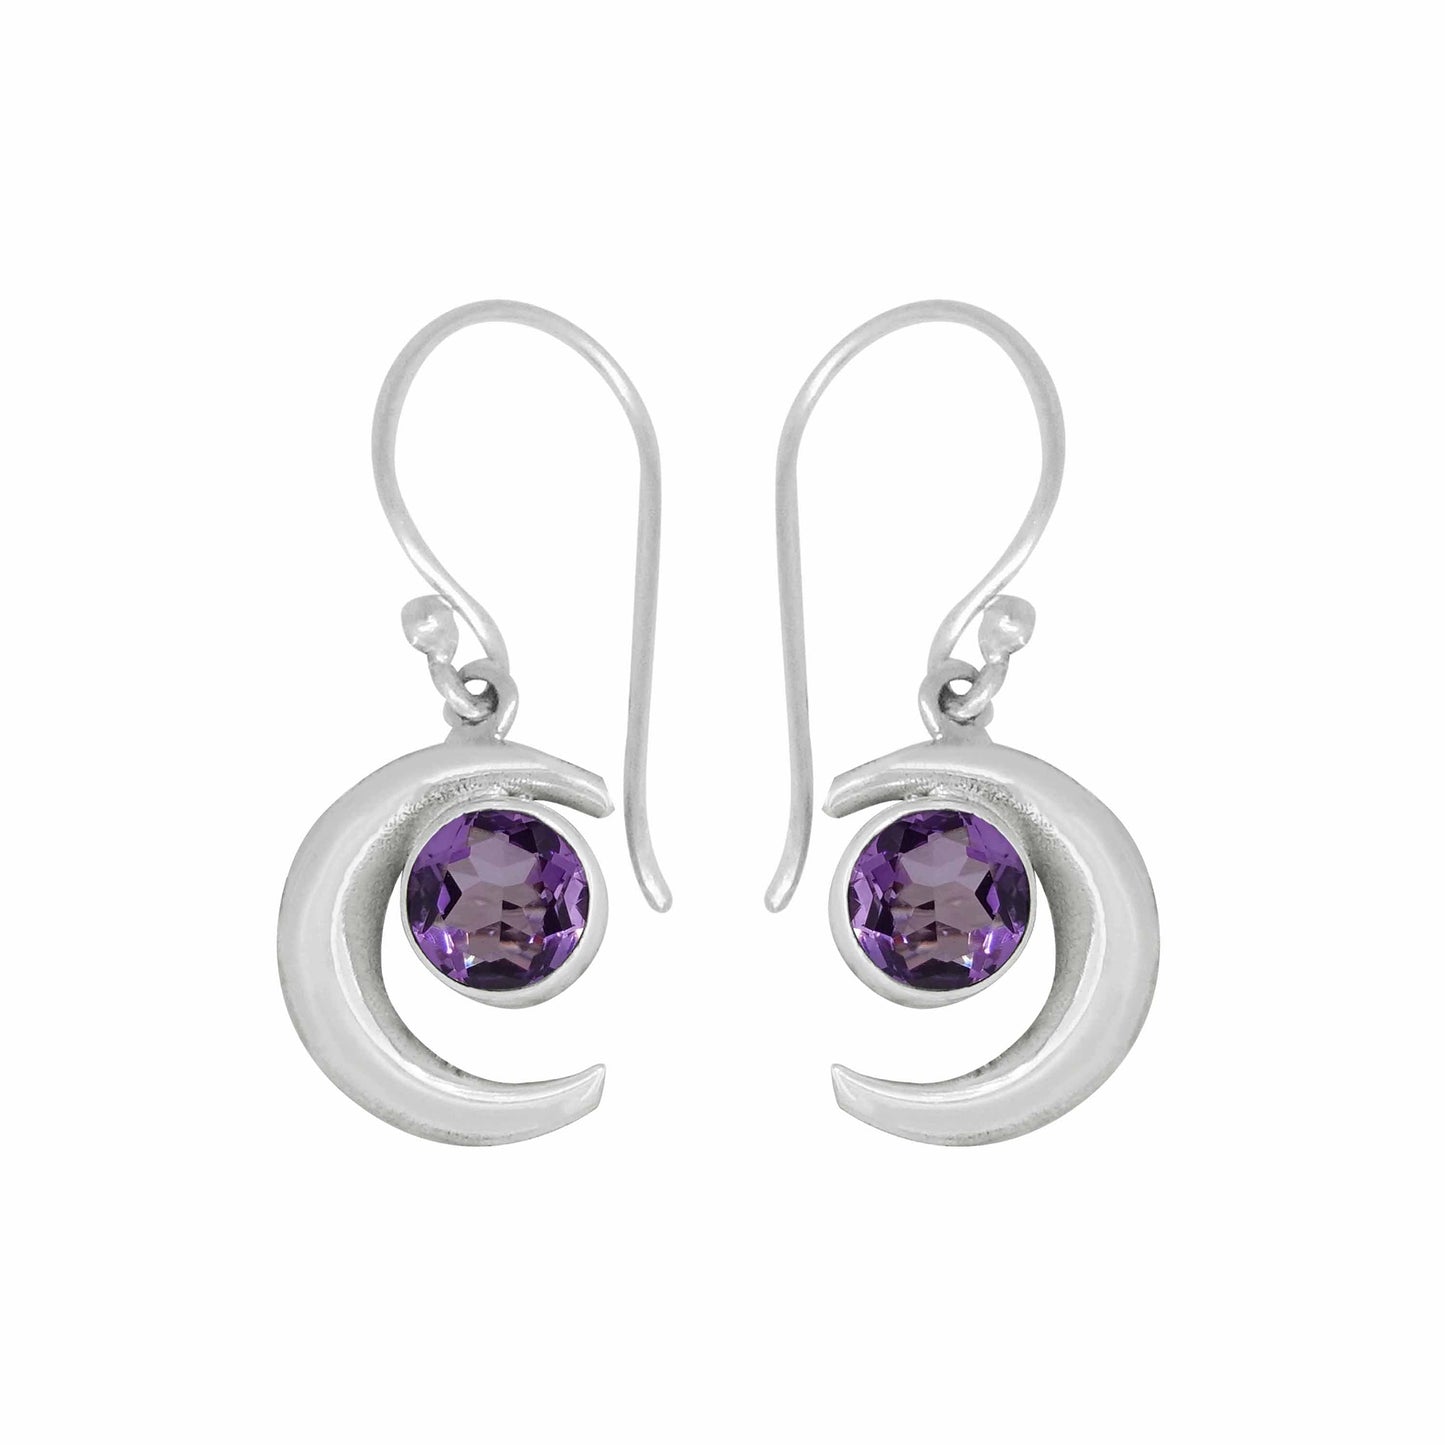 Earring Gemstones - 82380